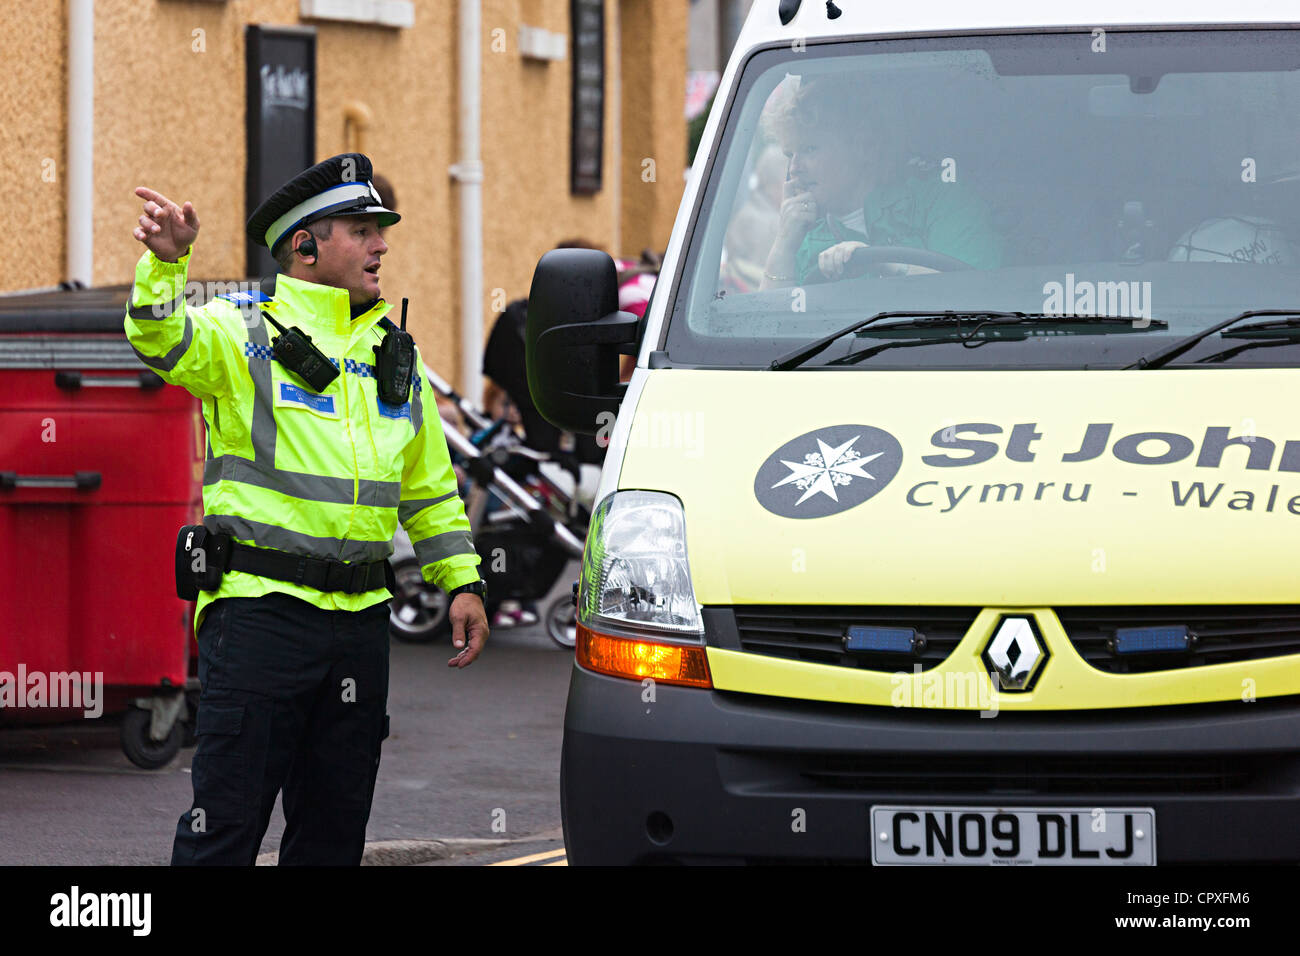 Agent de soutien communautaire de la police la direction d'un conducteur d'Ambulance Saint-Jean, Galles, Royaume-Uni Banque D'Images